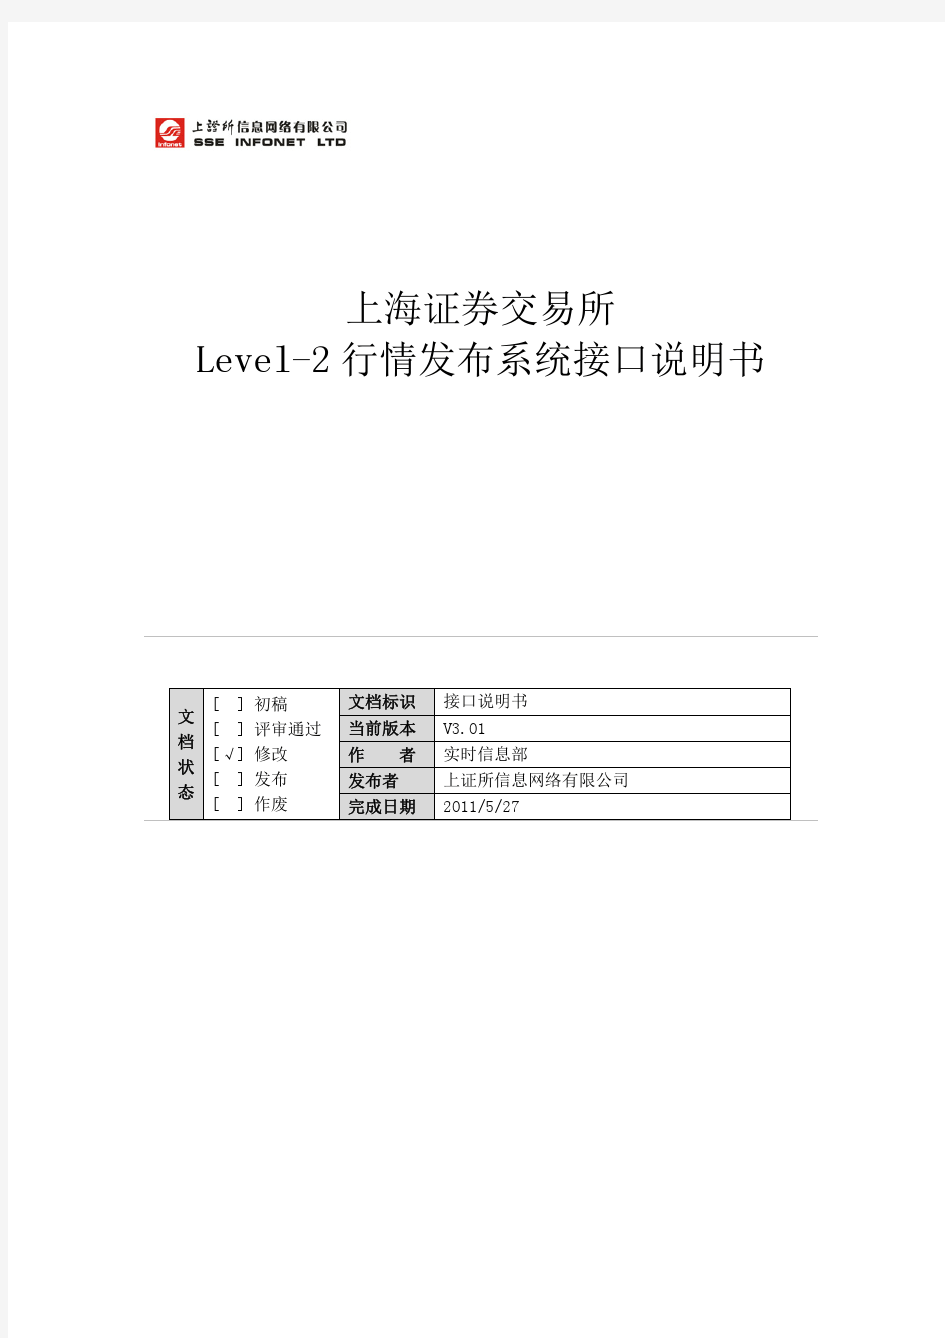 上海证券交易所Level-2行情发布系统接口说明书_3_01_